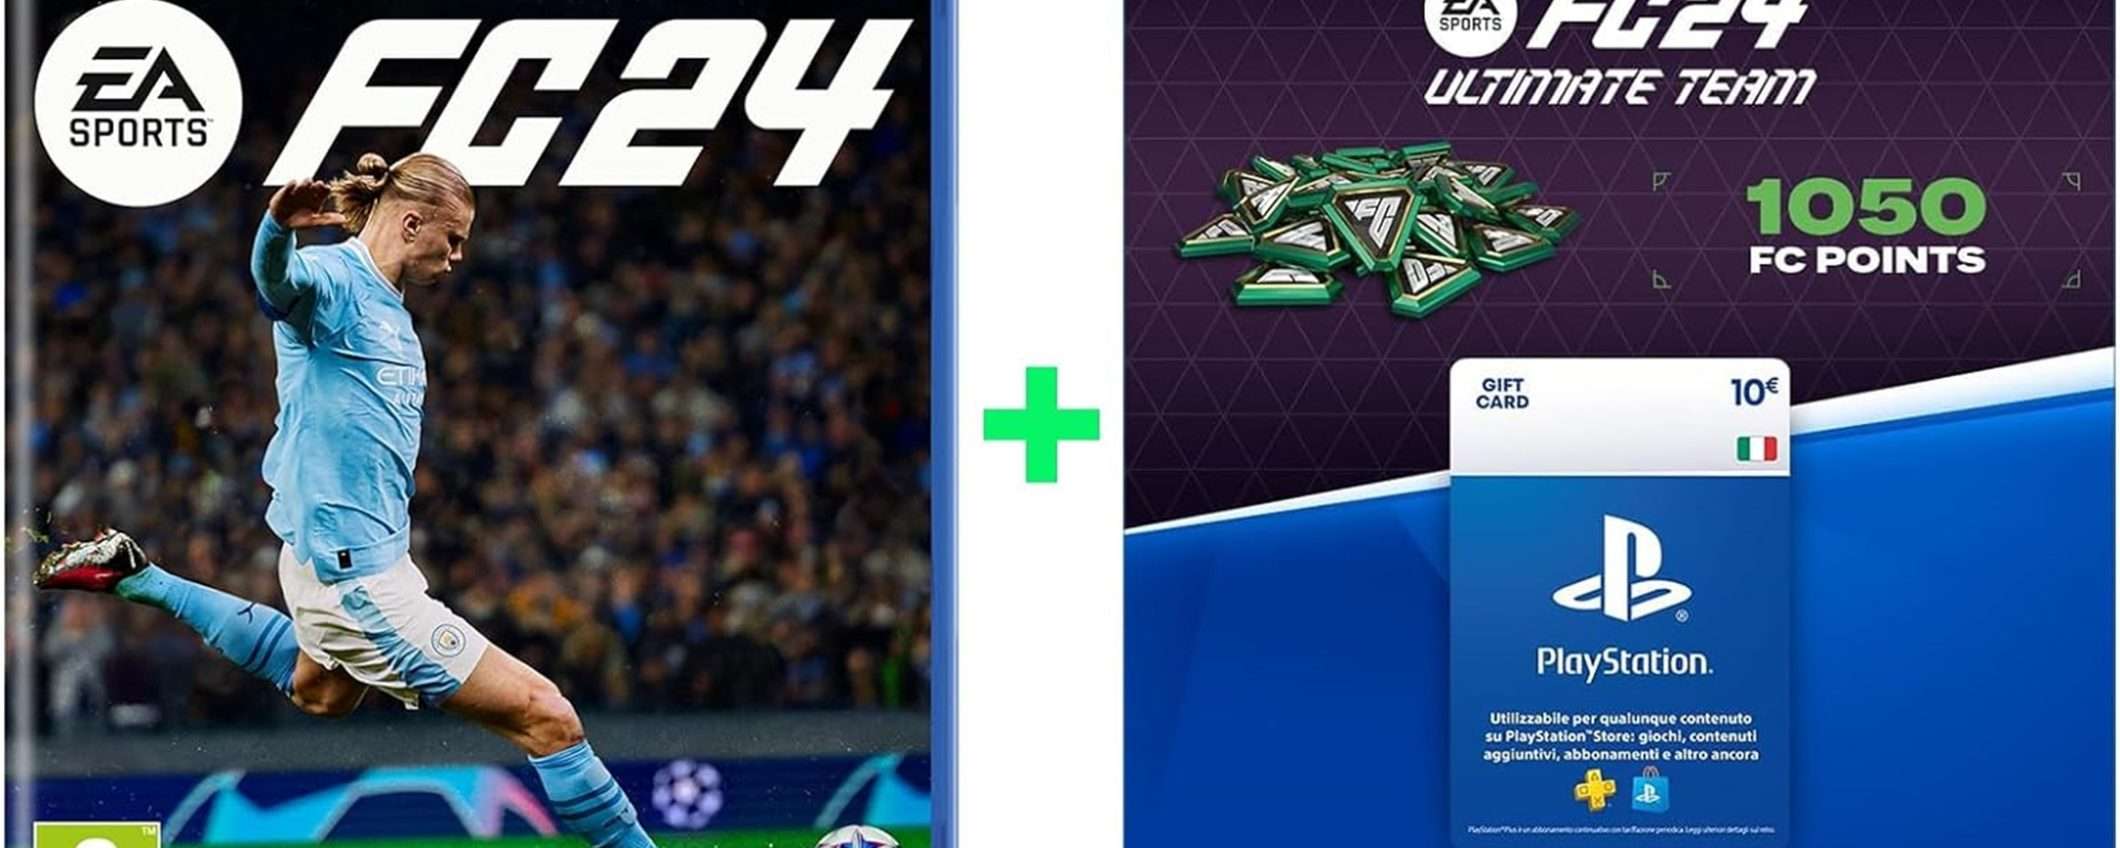 EA SPORTS FC 24 con Gift Card da 10€ per PS Store a soli 59€ su Amazon